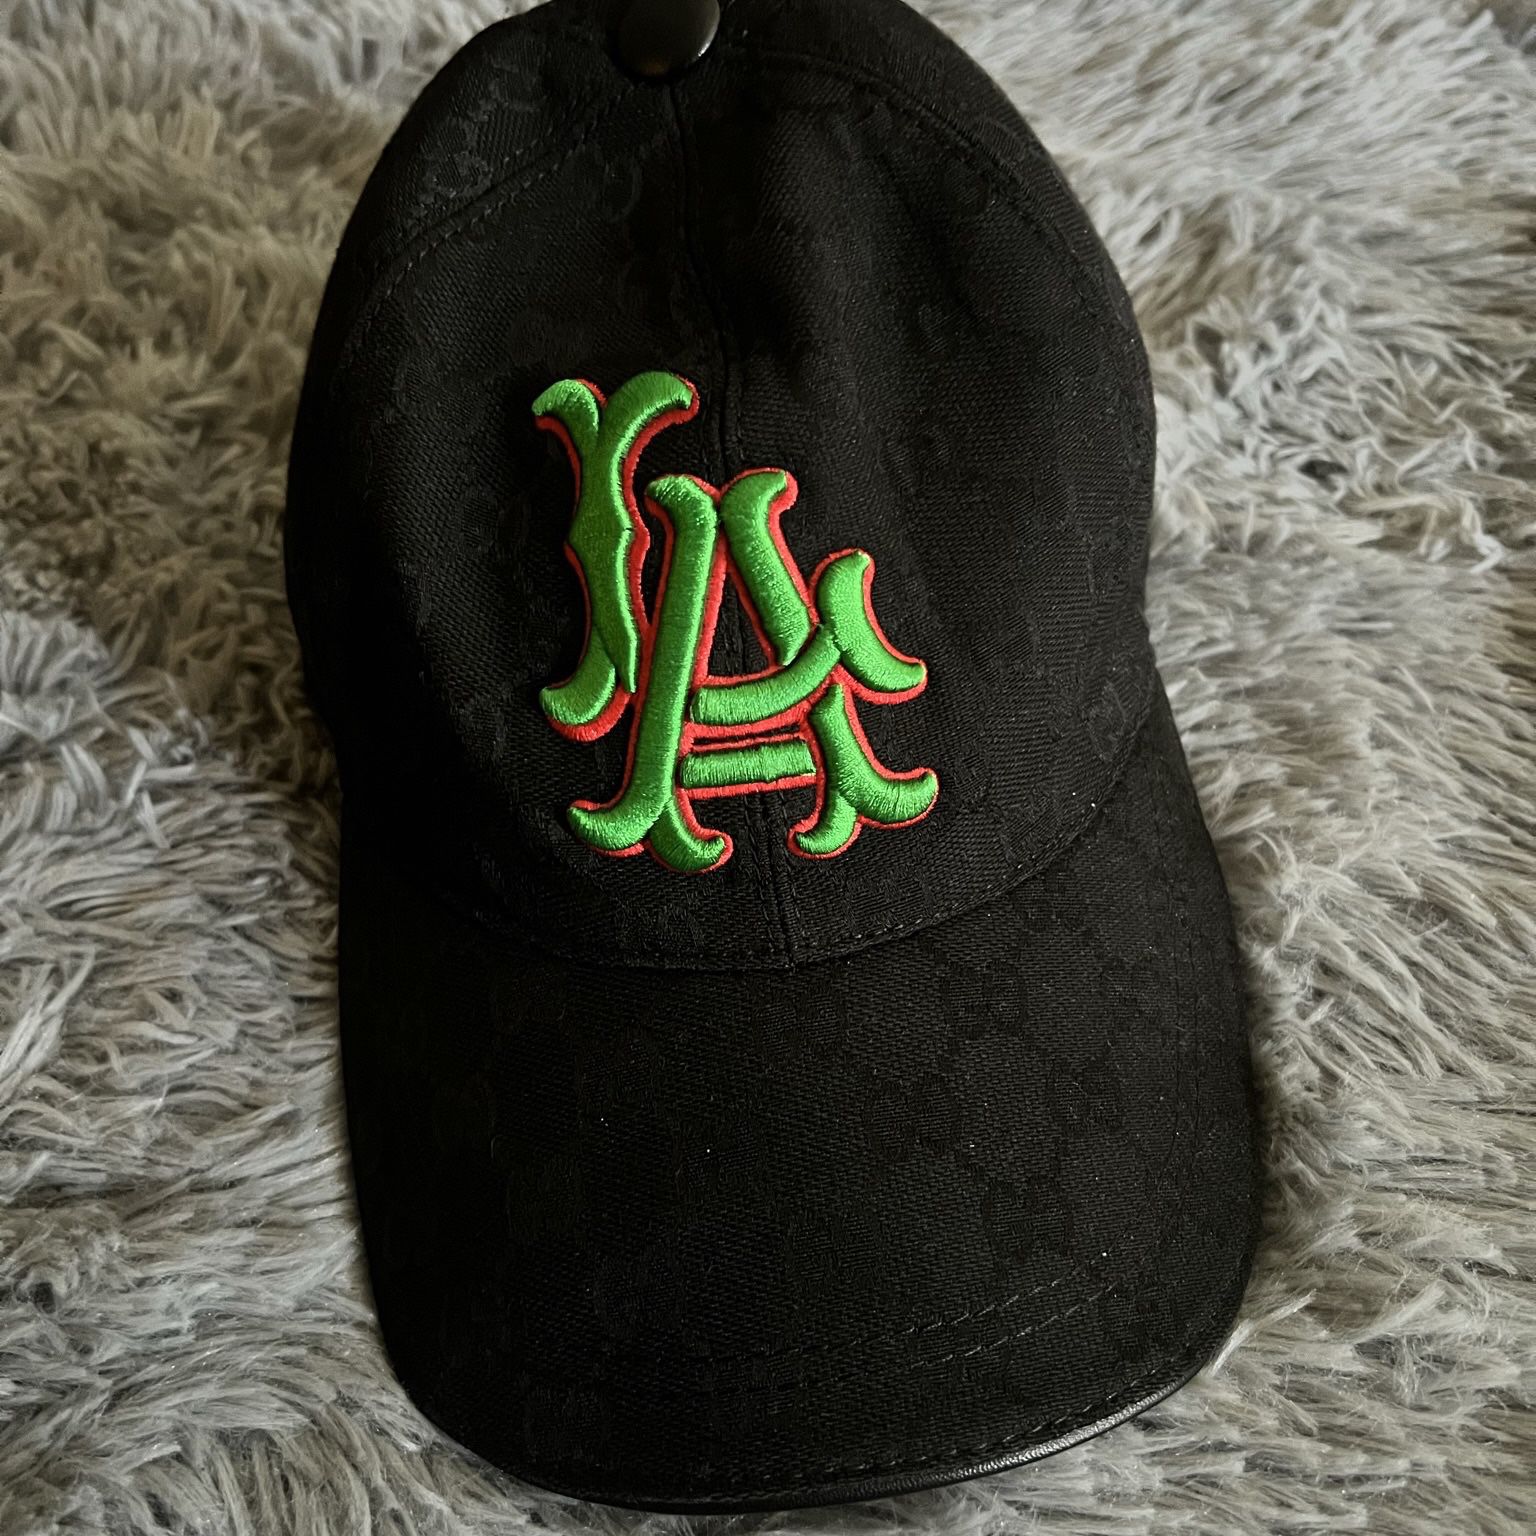 Gucci “LA” logo hat